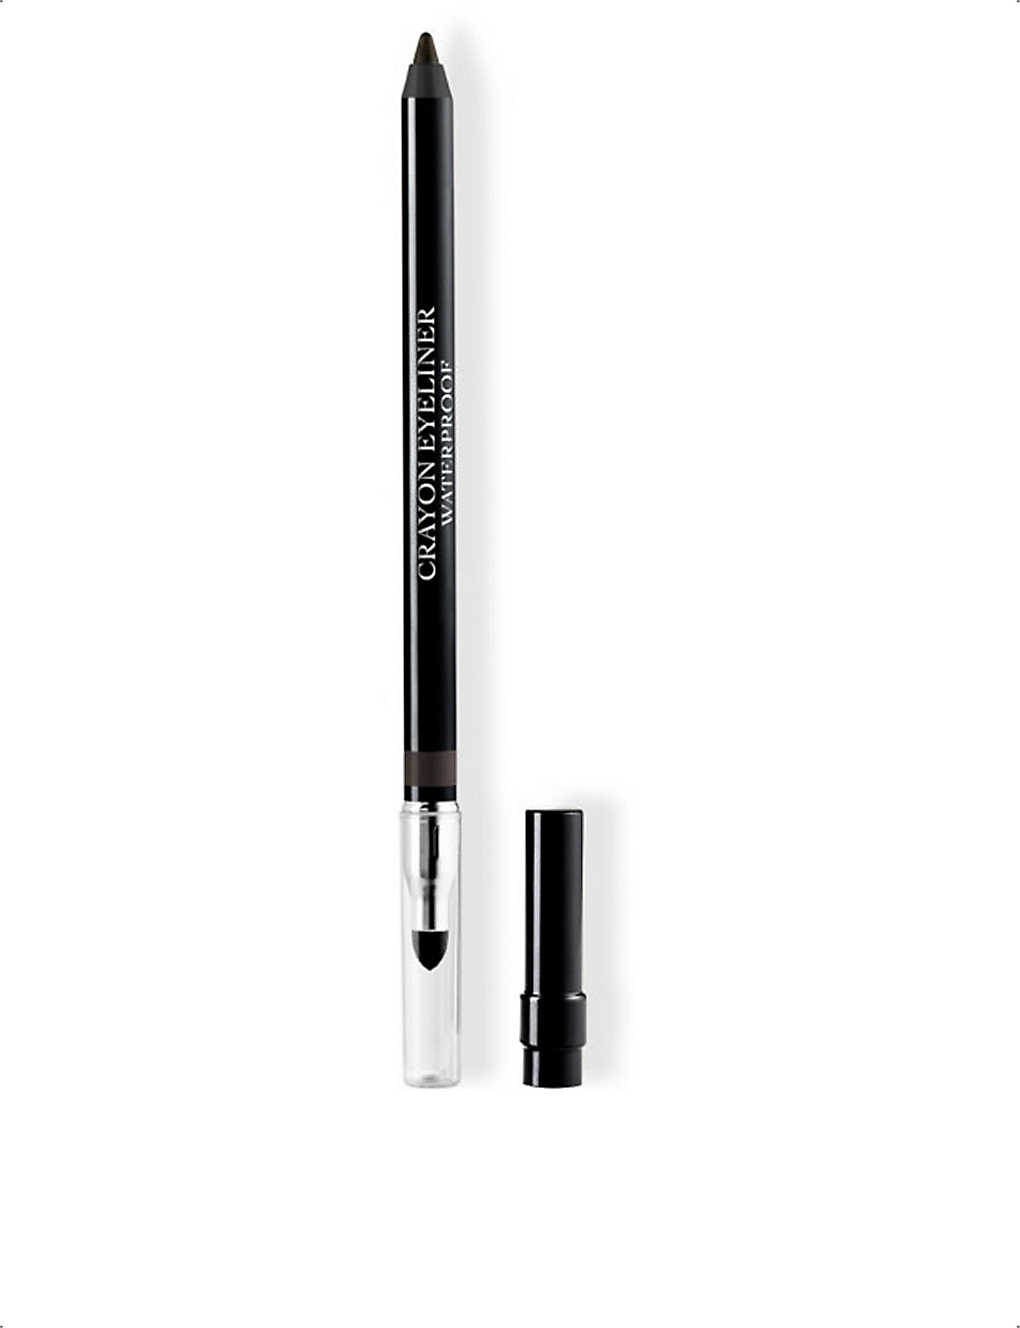 DIOR Diorshow Waterproof Long-Wear eyeliner pencil 1.2g £22.00